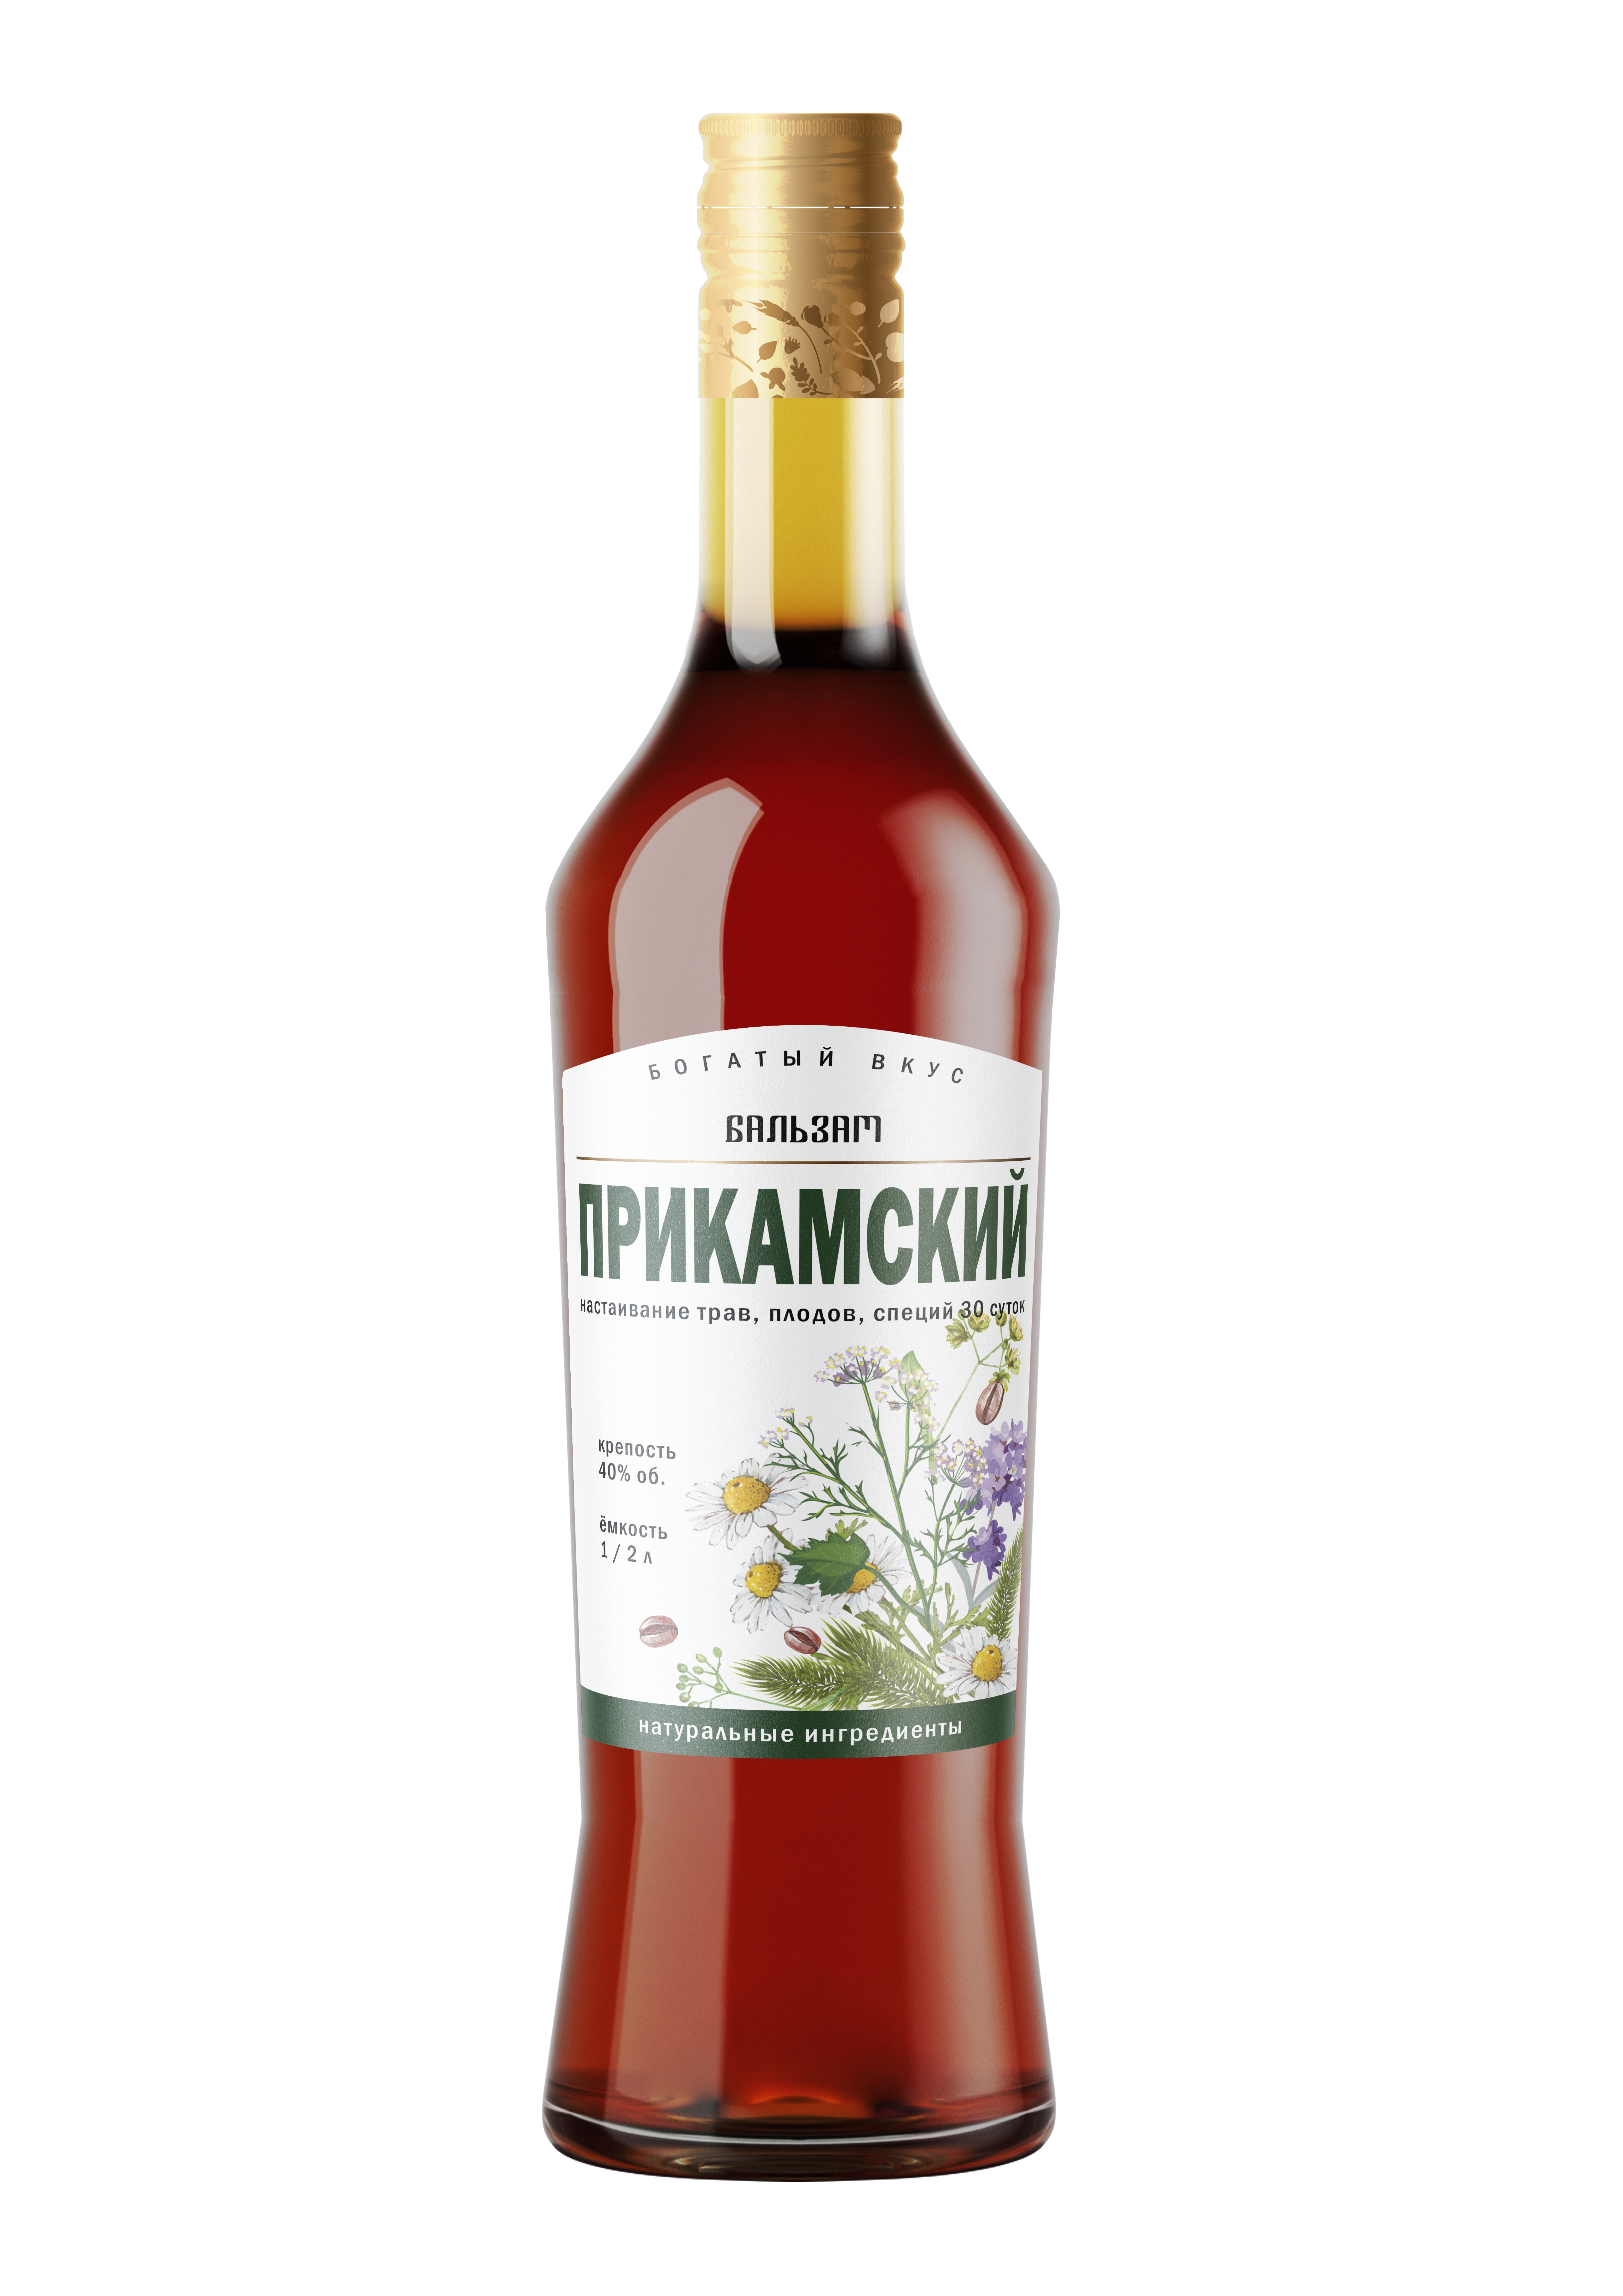 卡马河沿岸草药酒 (Balsam Prikamskiy) - 0.5 L : 卡马河沿岸草药酒 (Balsam Prikamskiy)